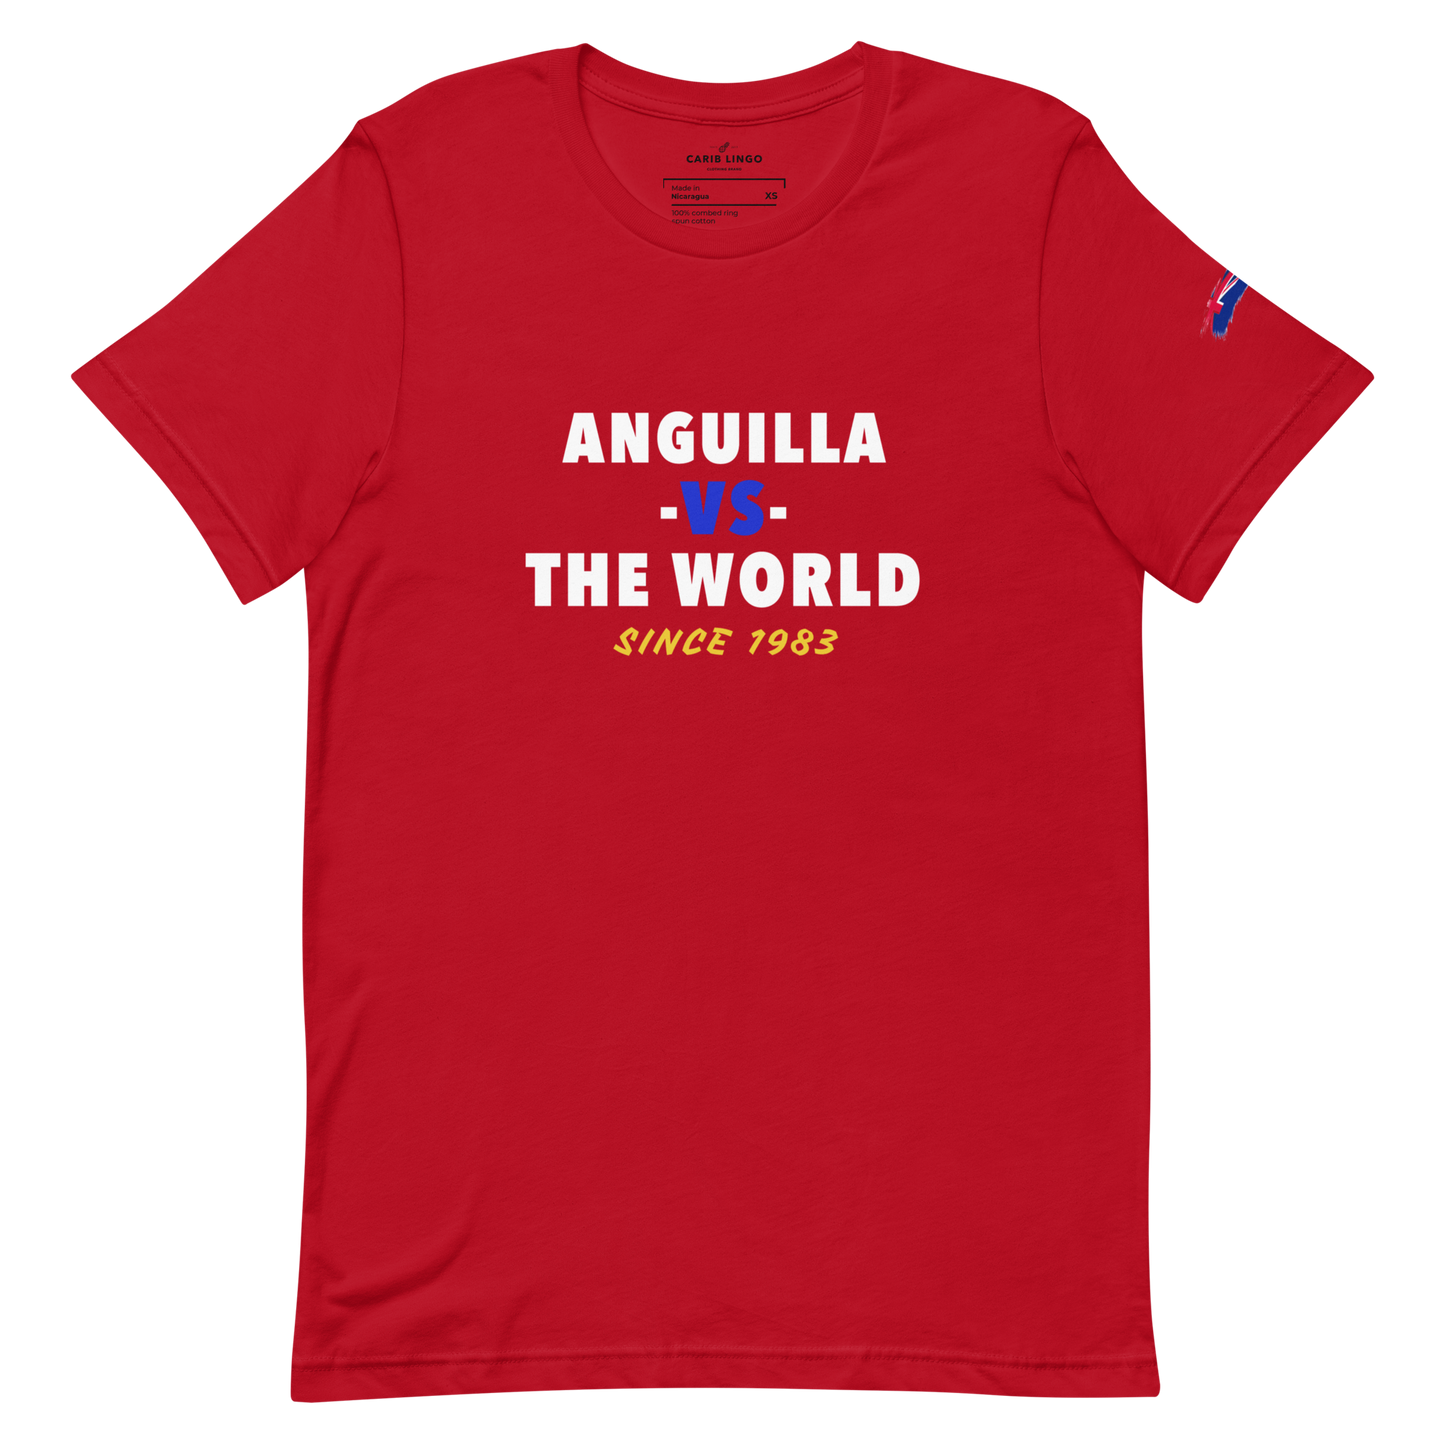 Anguilla -vs- The World Unisex t-shirt